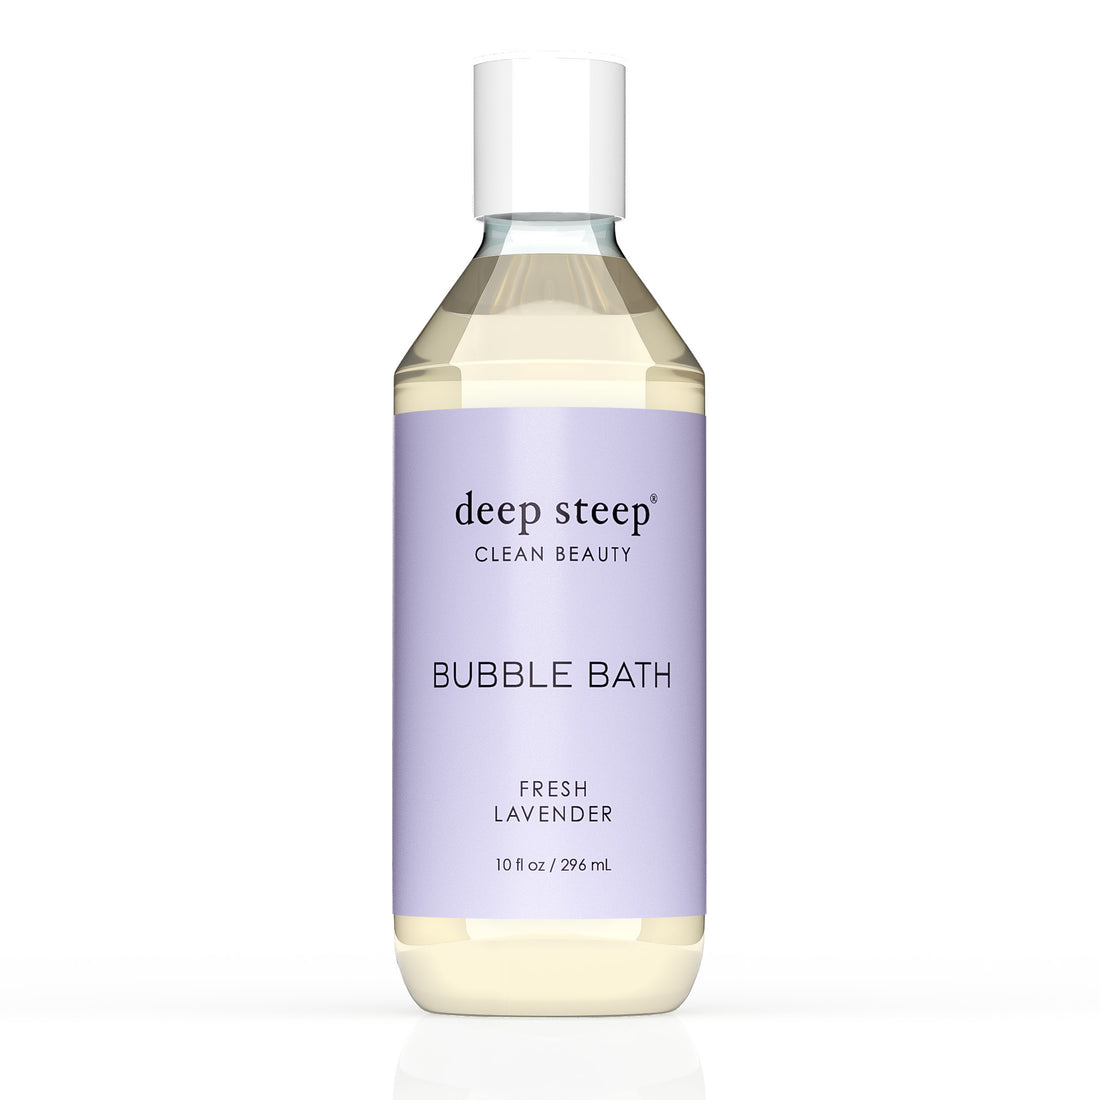 Bubble Bath - Lavender Vanilla